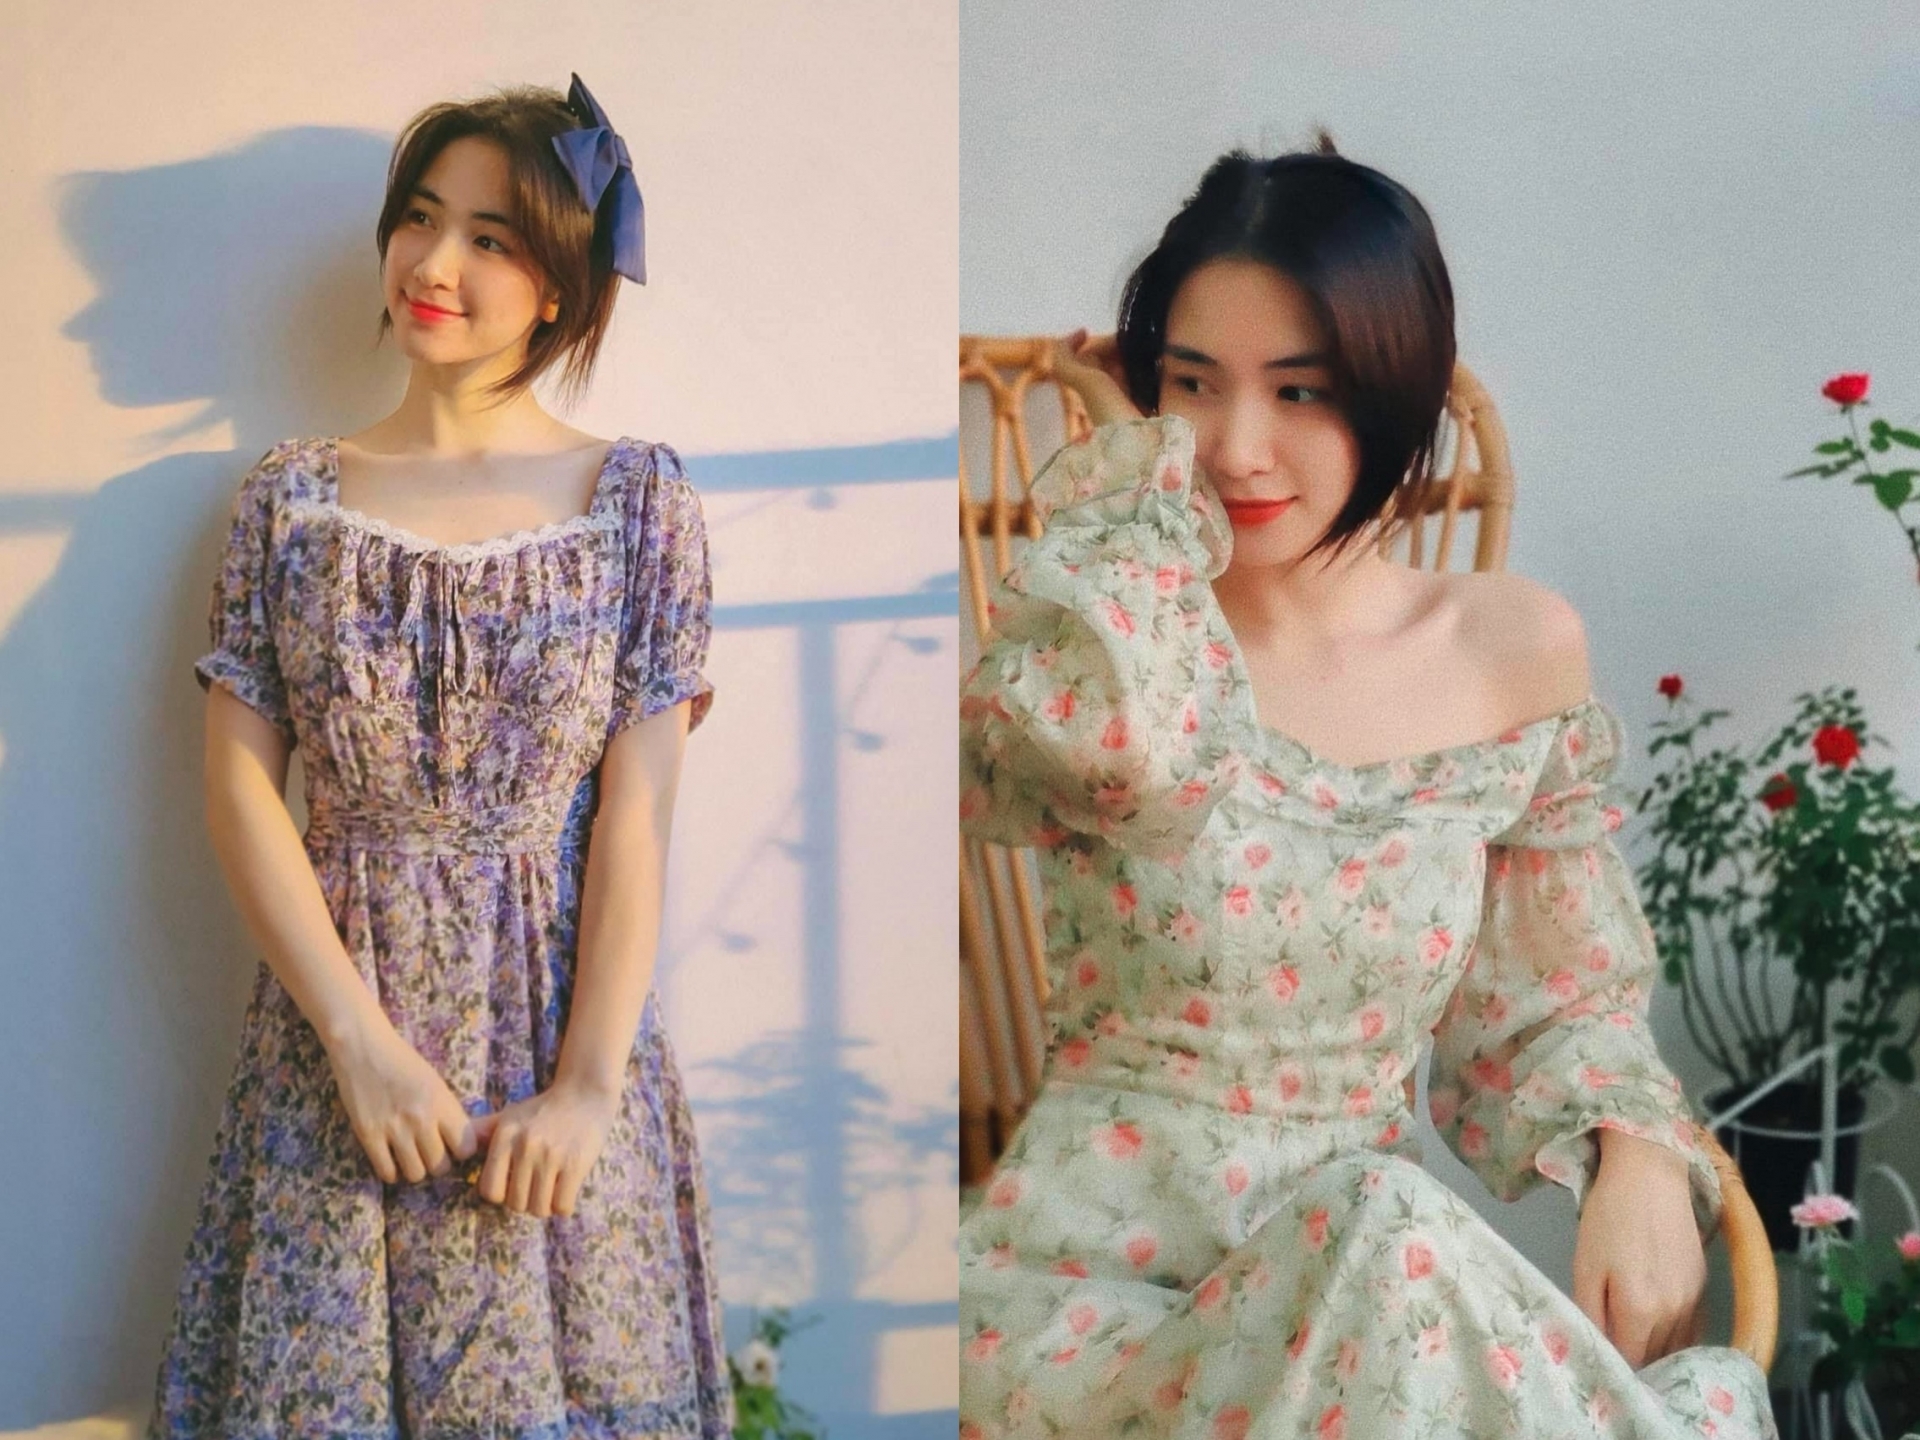 Nhìn những hình ảnh này của Hoà Minzy, chẳng ai nghĩ cô đã cận kề tuổi 30 và lại còn là một bà mẹ bỉm sữa. Người đẹp khéo léo lựa chọn những chiếc váy hoa dáng dài để khoe vẻ đẹp ngây thơ, dịu dàng tựa như những cô nàng mới lớn.